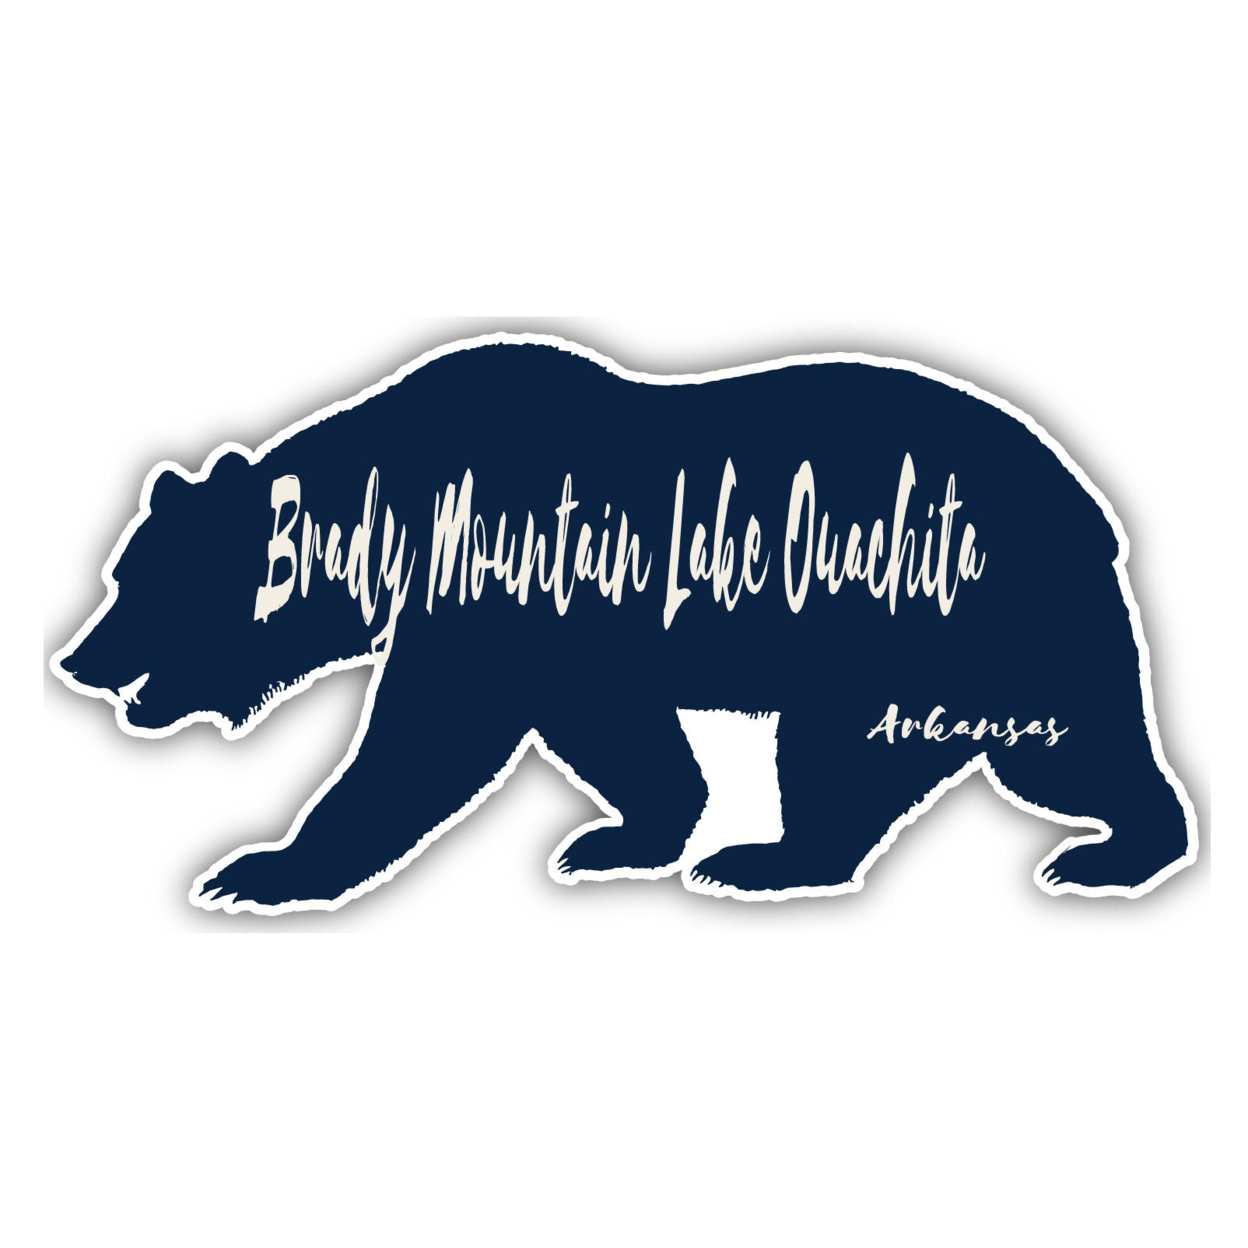 Brady Mountain Lake Ouachita Arkansas Souvenir Decorative Stickers (Choose Theme And Size) - Single Unit, 4-Inch, Bear